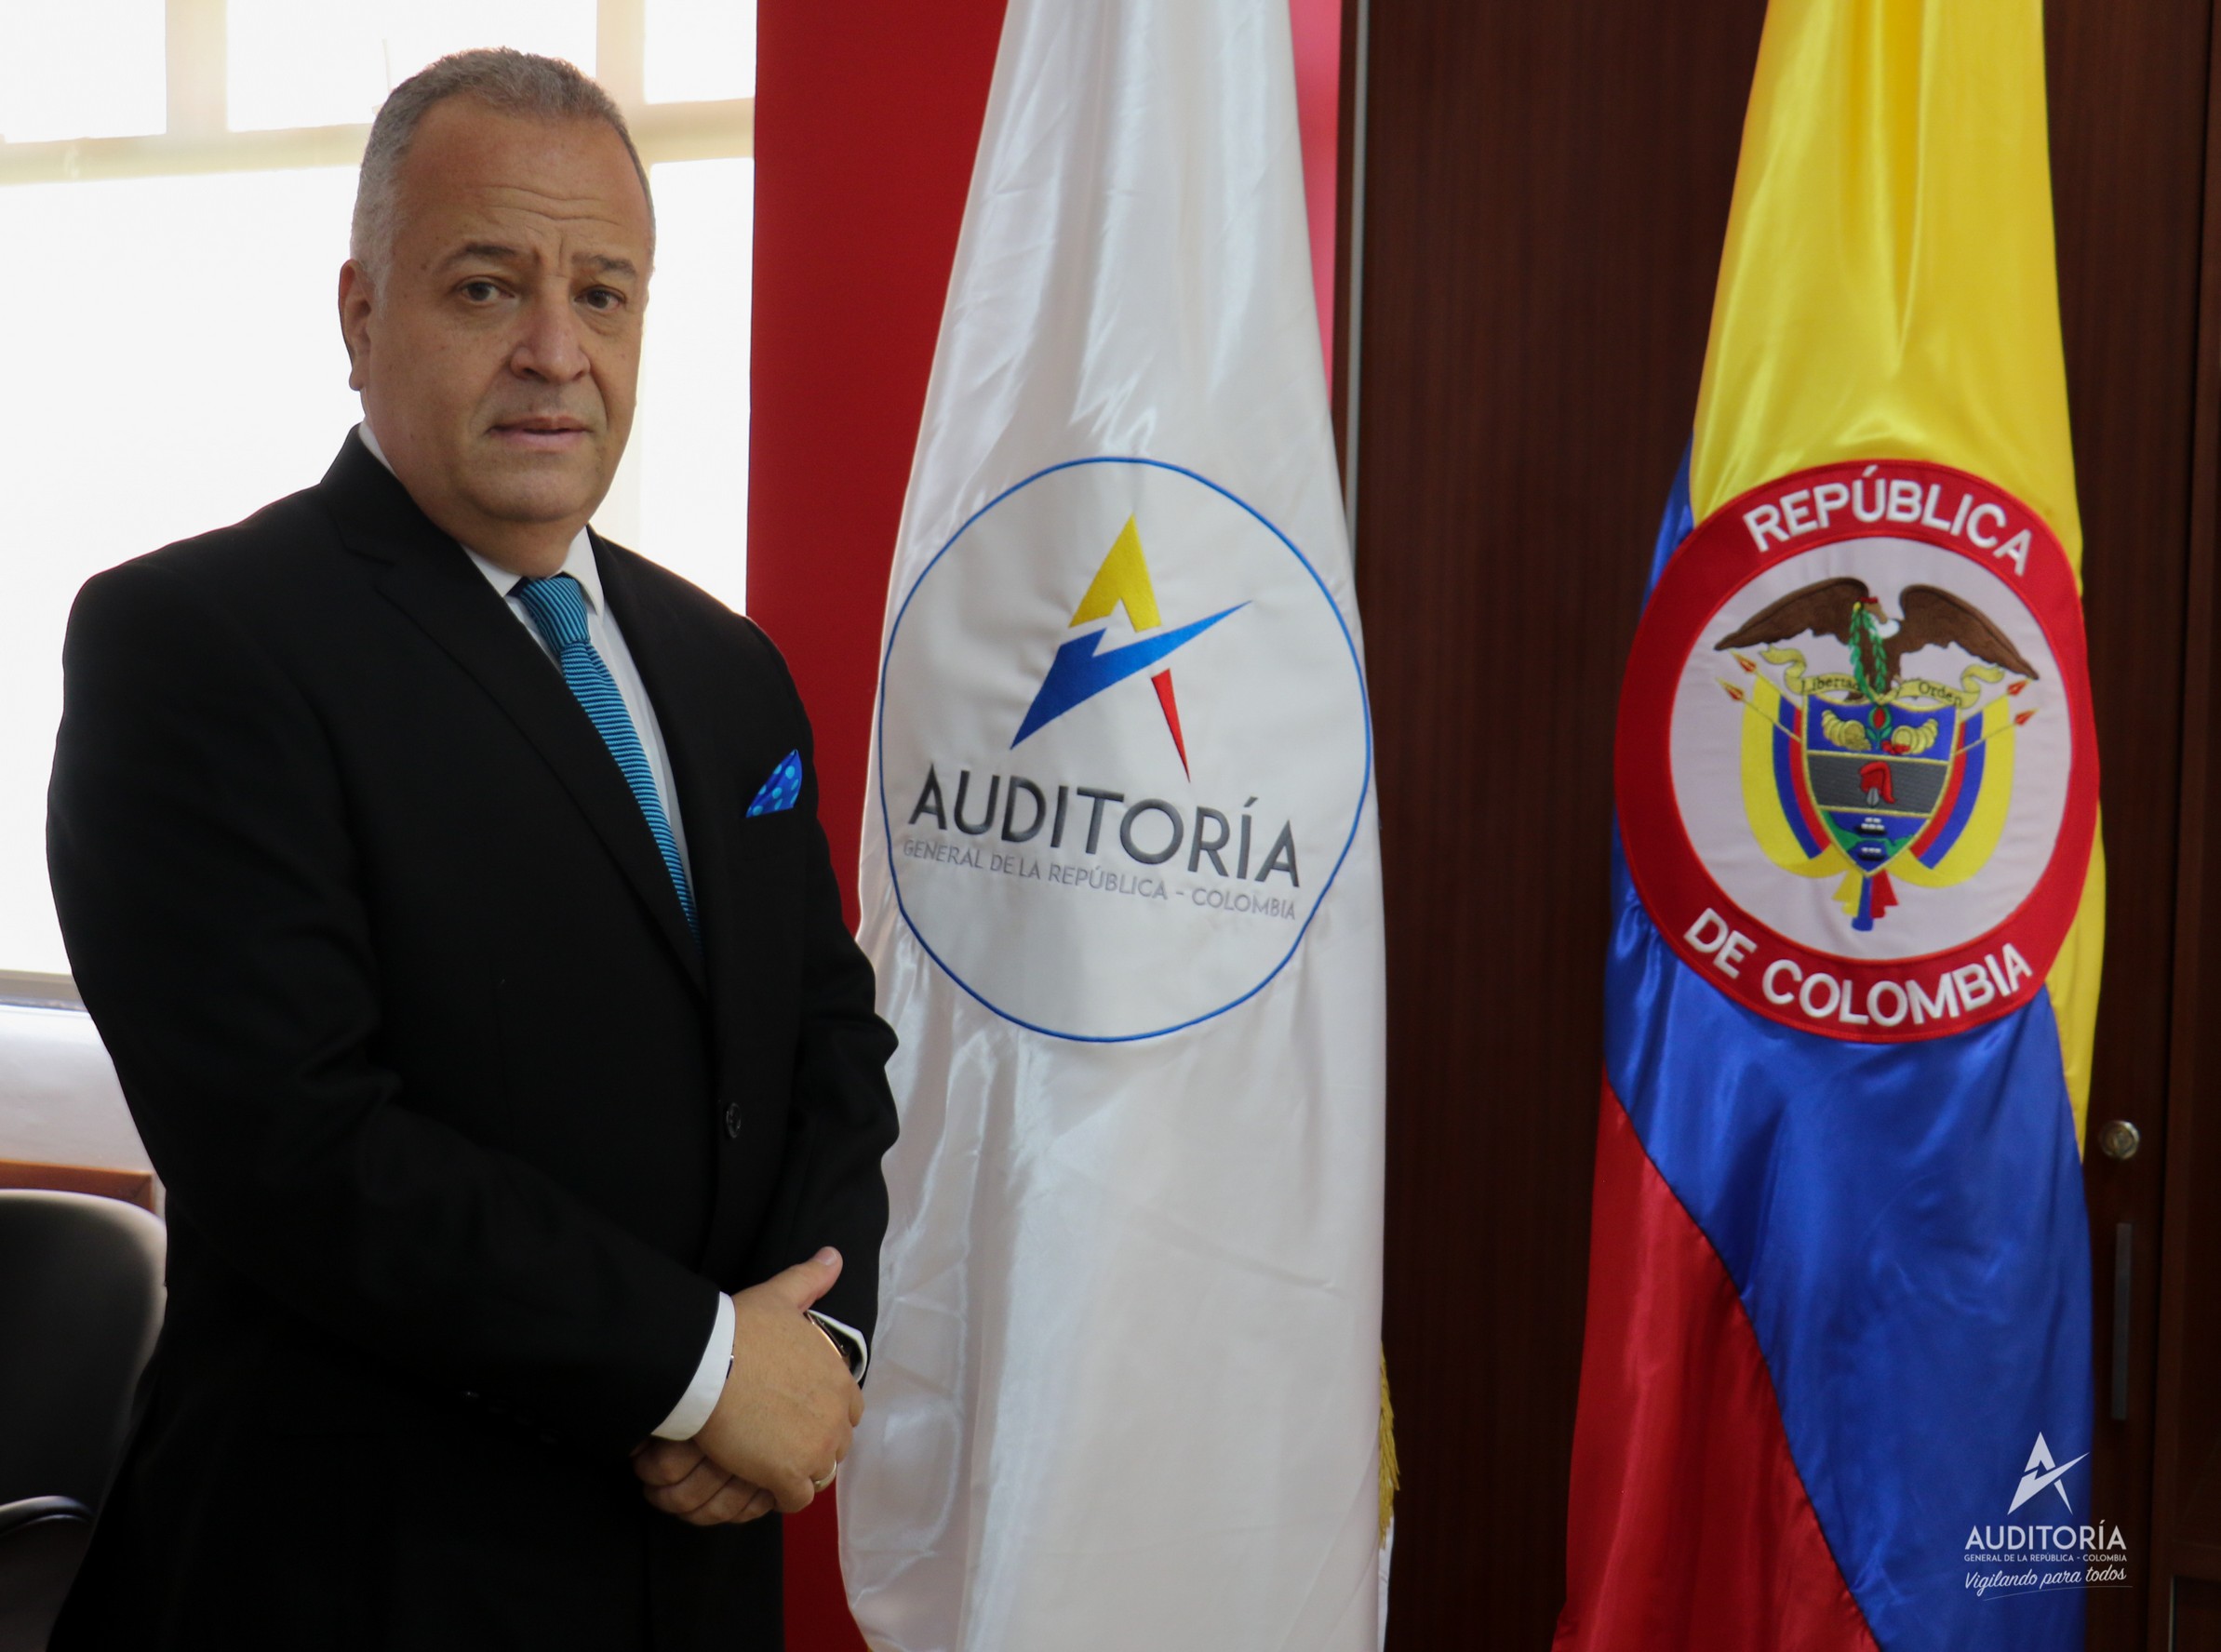  Jaime Escobar Vélez, nuevo Secretario General de la AGR